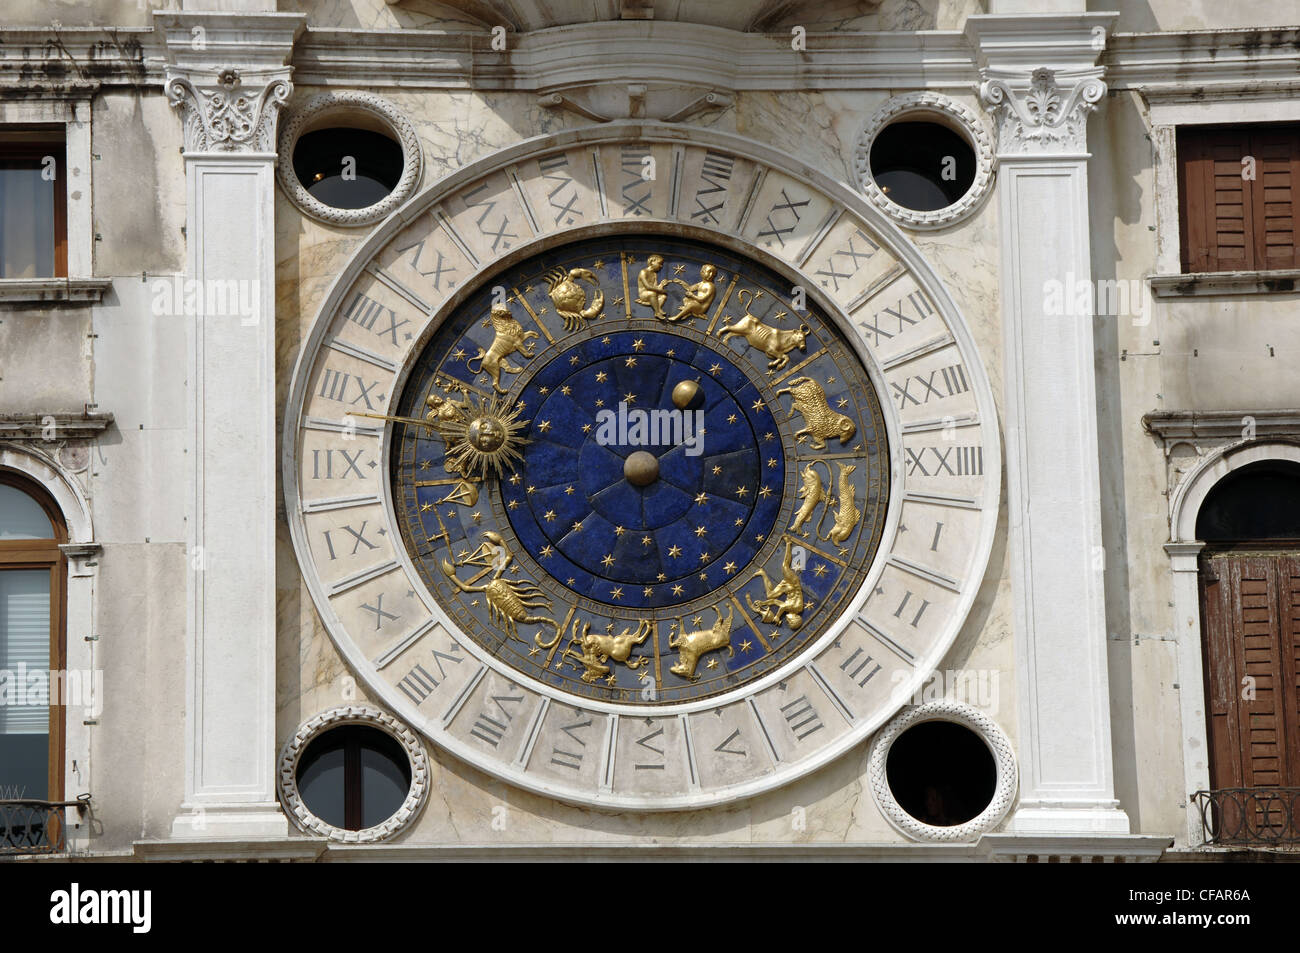 Orologio astronomico nella Torre dell'Orologio di Piazza San Marco. Xv secolo. Venezia. L'Italia. Foto Stock